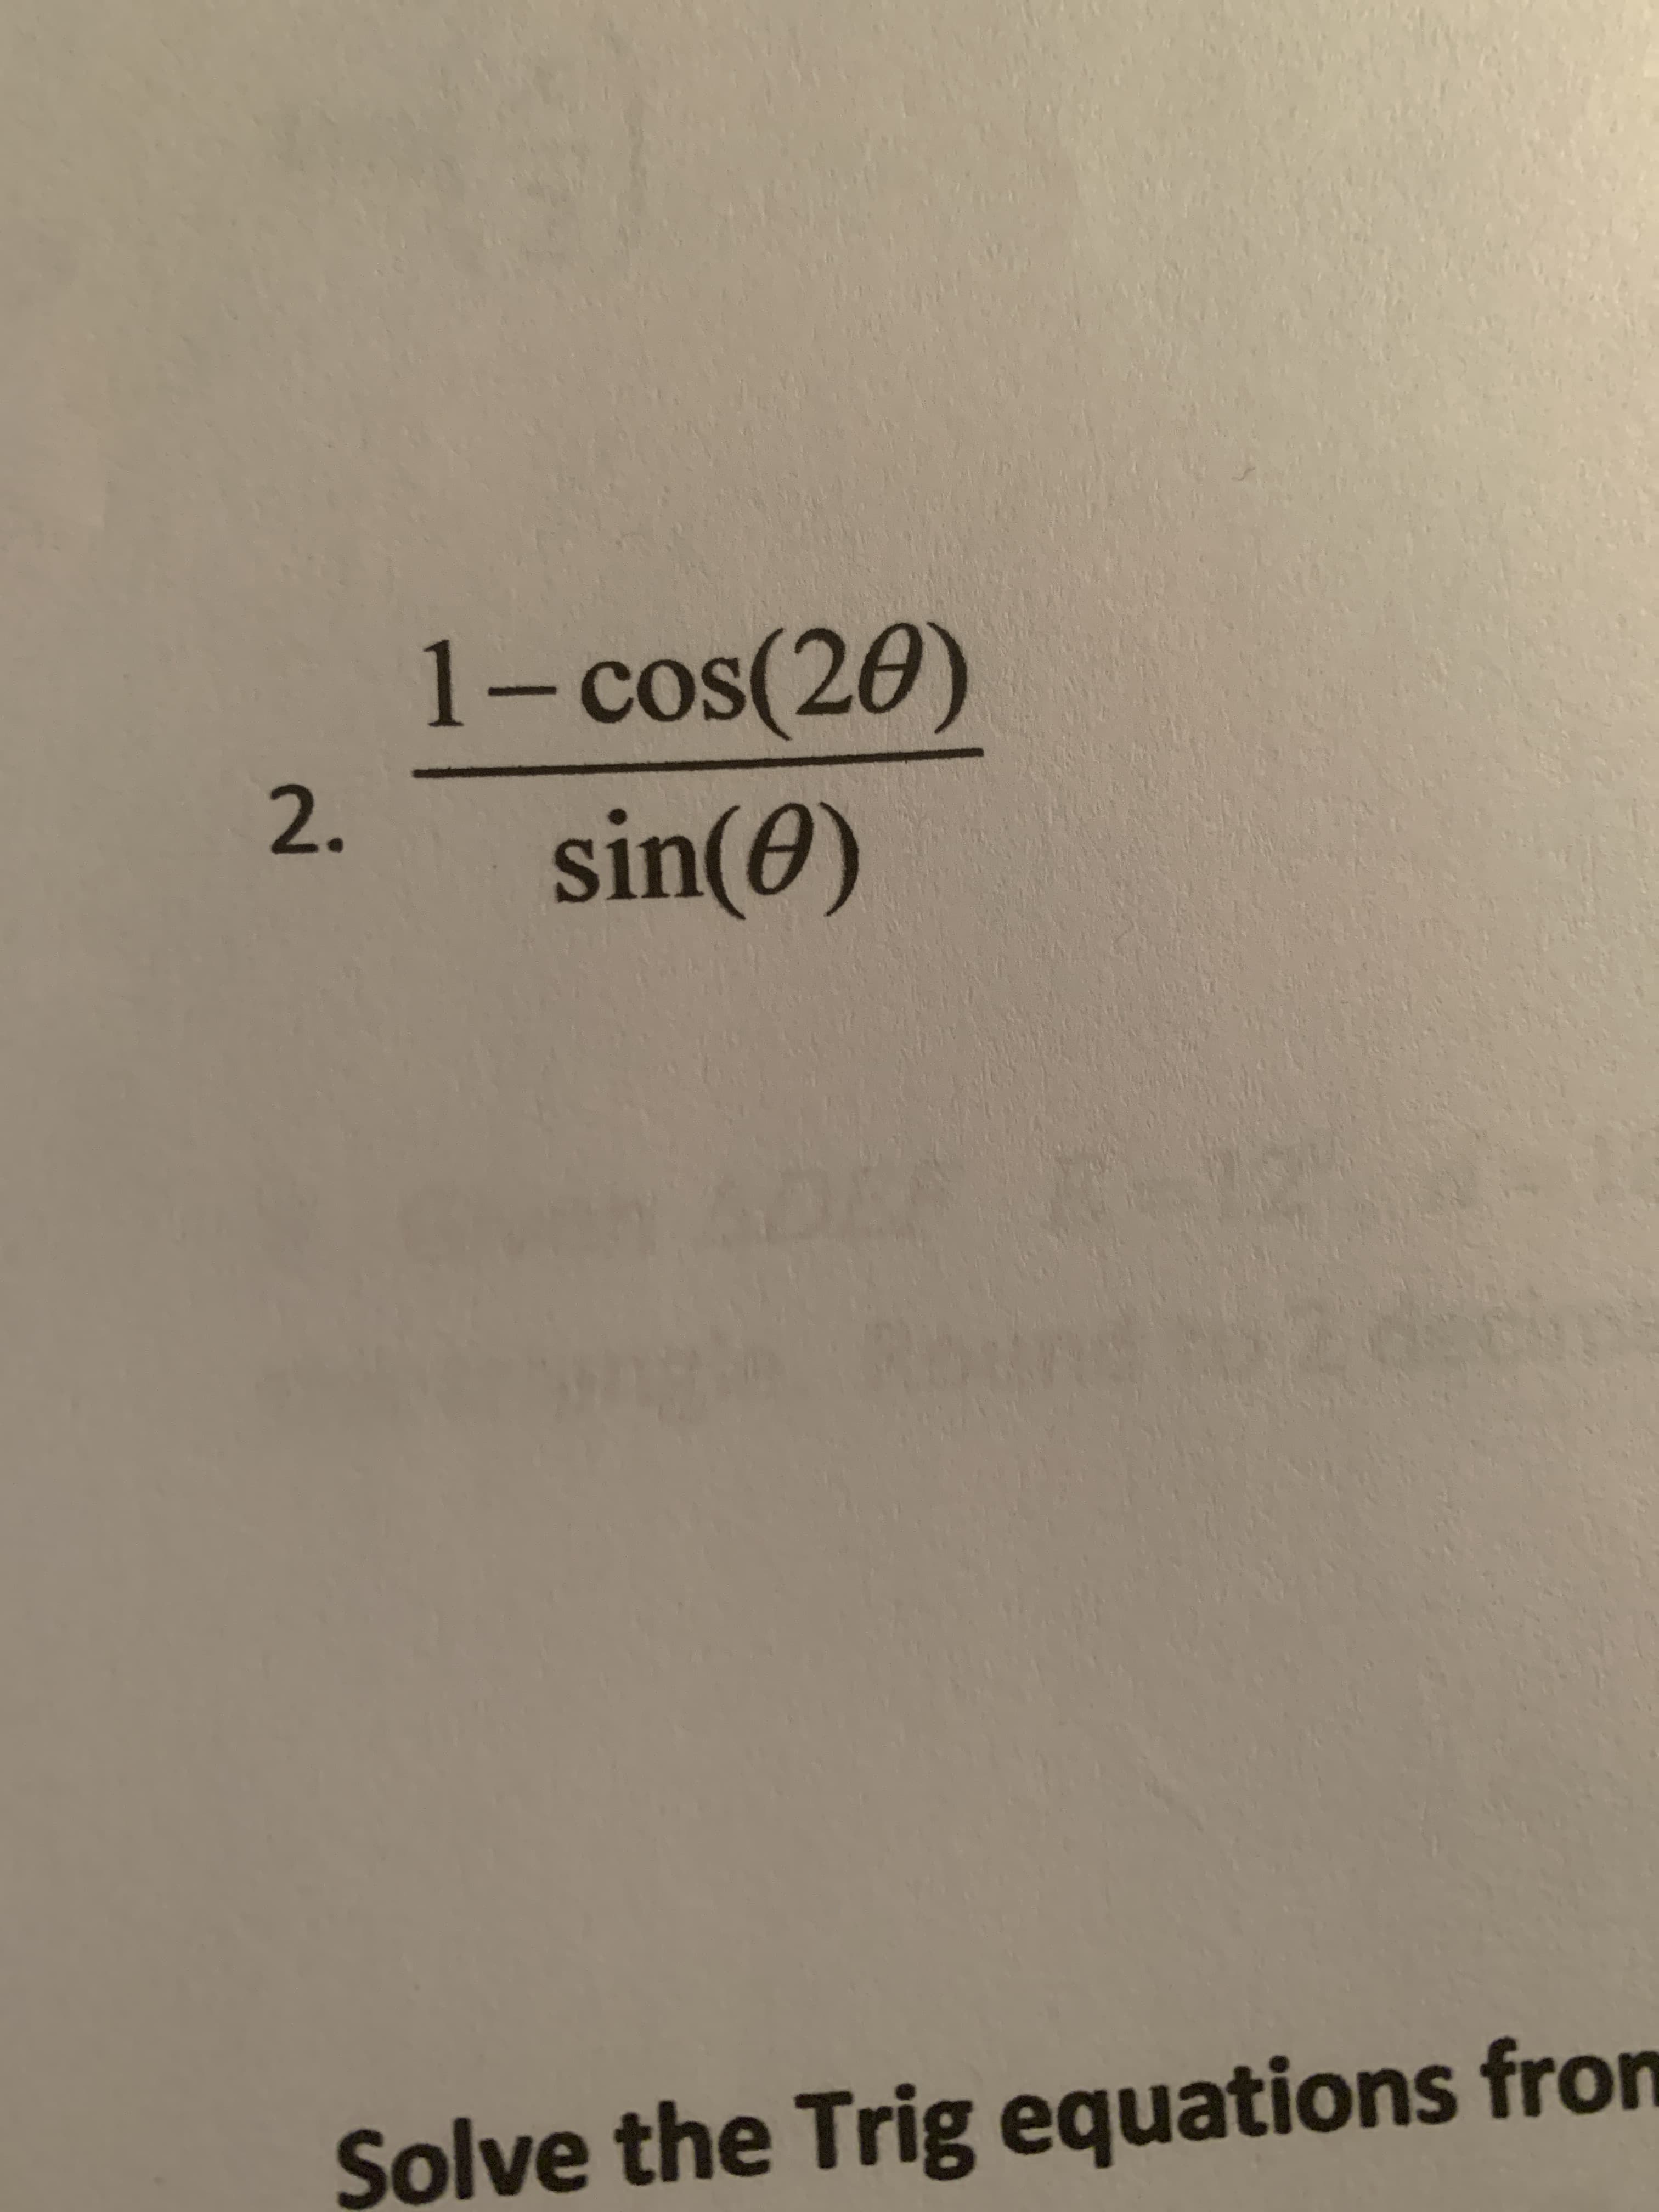 1- cos(20)
cOS
2.
sin(0)
